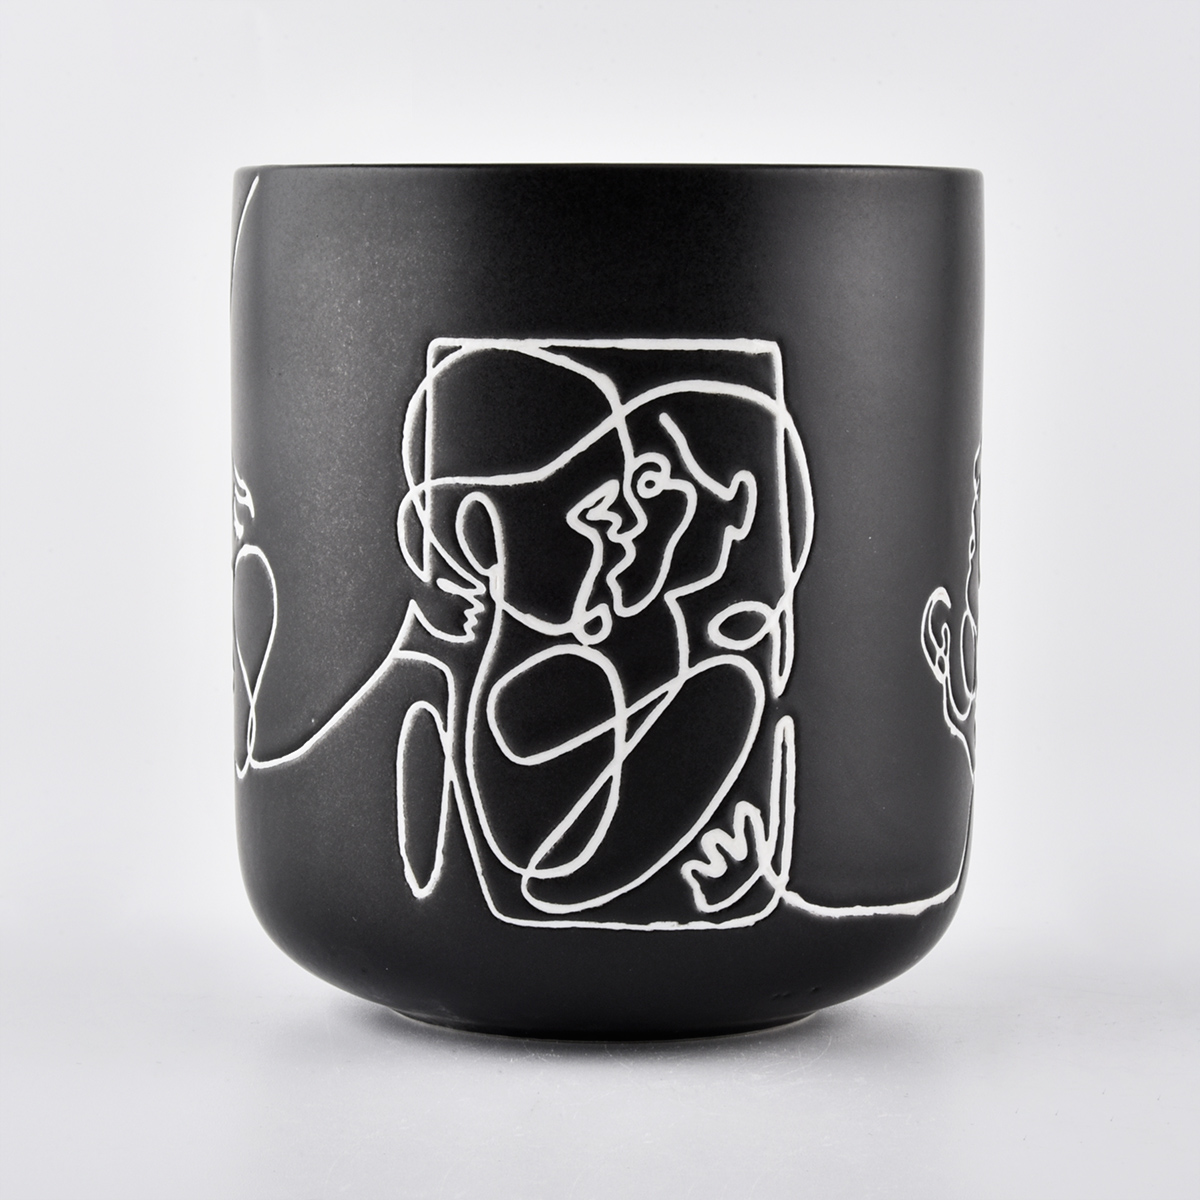 10oz borcan de lumânare ceramică neagră cu lucrări de artă schiță